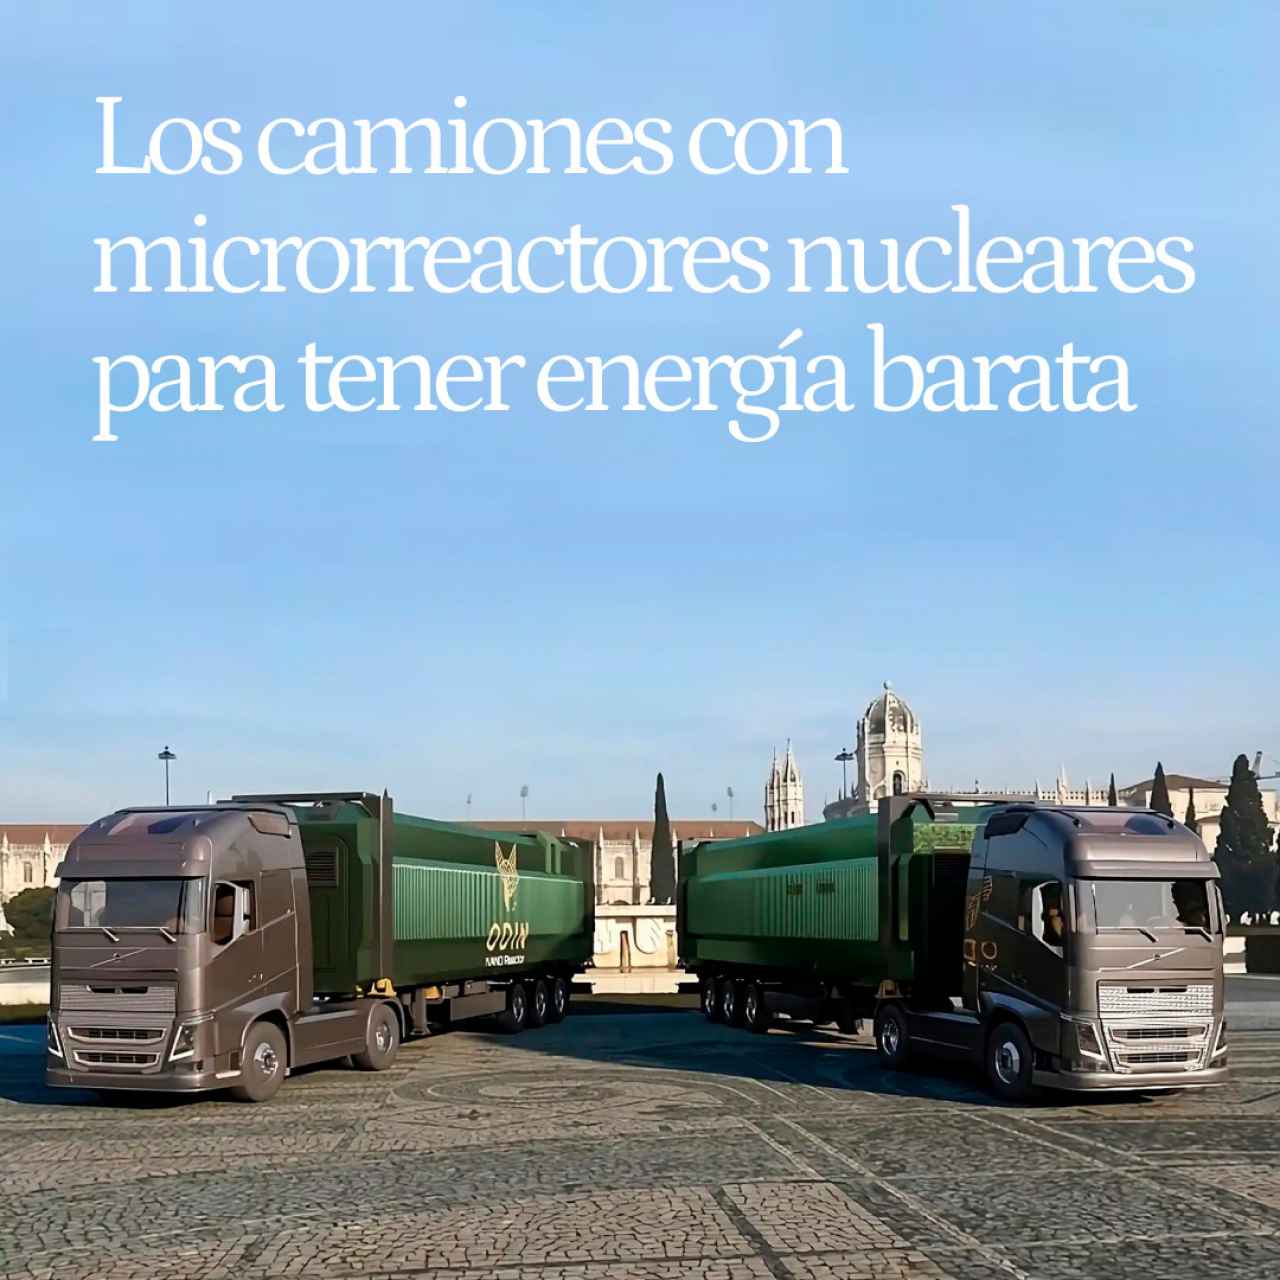 Odin y Zeus, los camiones con microrreactores nucleares para poder tener energía barata en cualquier lugar